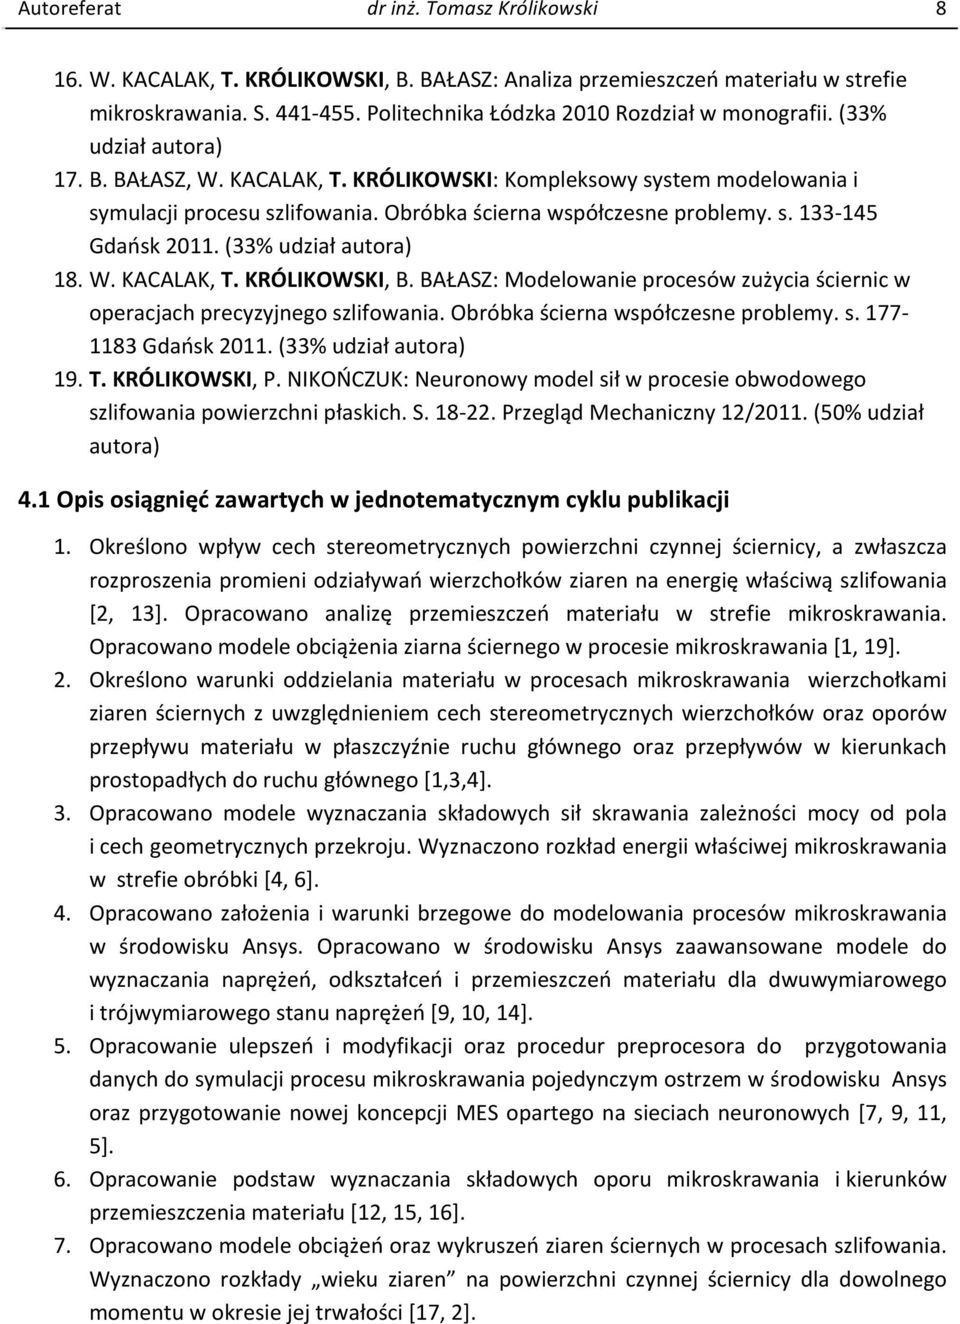 Obróbka ścierna współczesne problemy. s. 133-145 Gdańsk 2011. (33% udział 18. W. KACALAK, T. KRÓLIKOWSKI, B. BAŁASZ: Modelowanie procesów zużycia ściernic w operacjach precyzyjnego szlifowania.